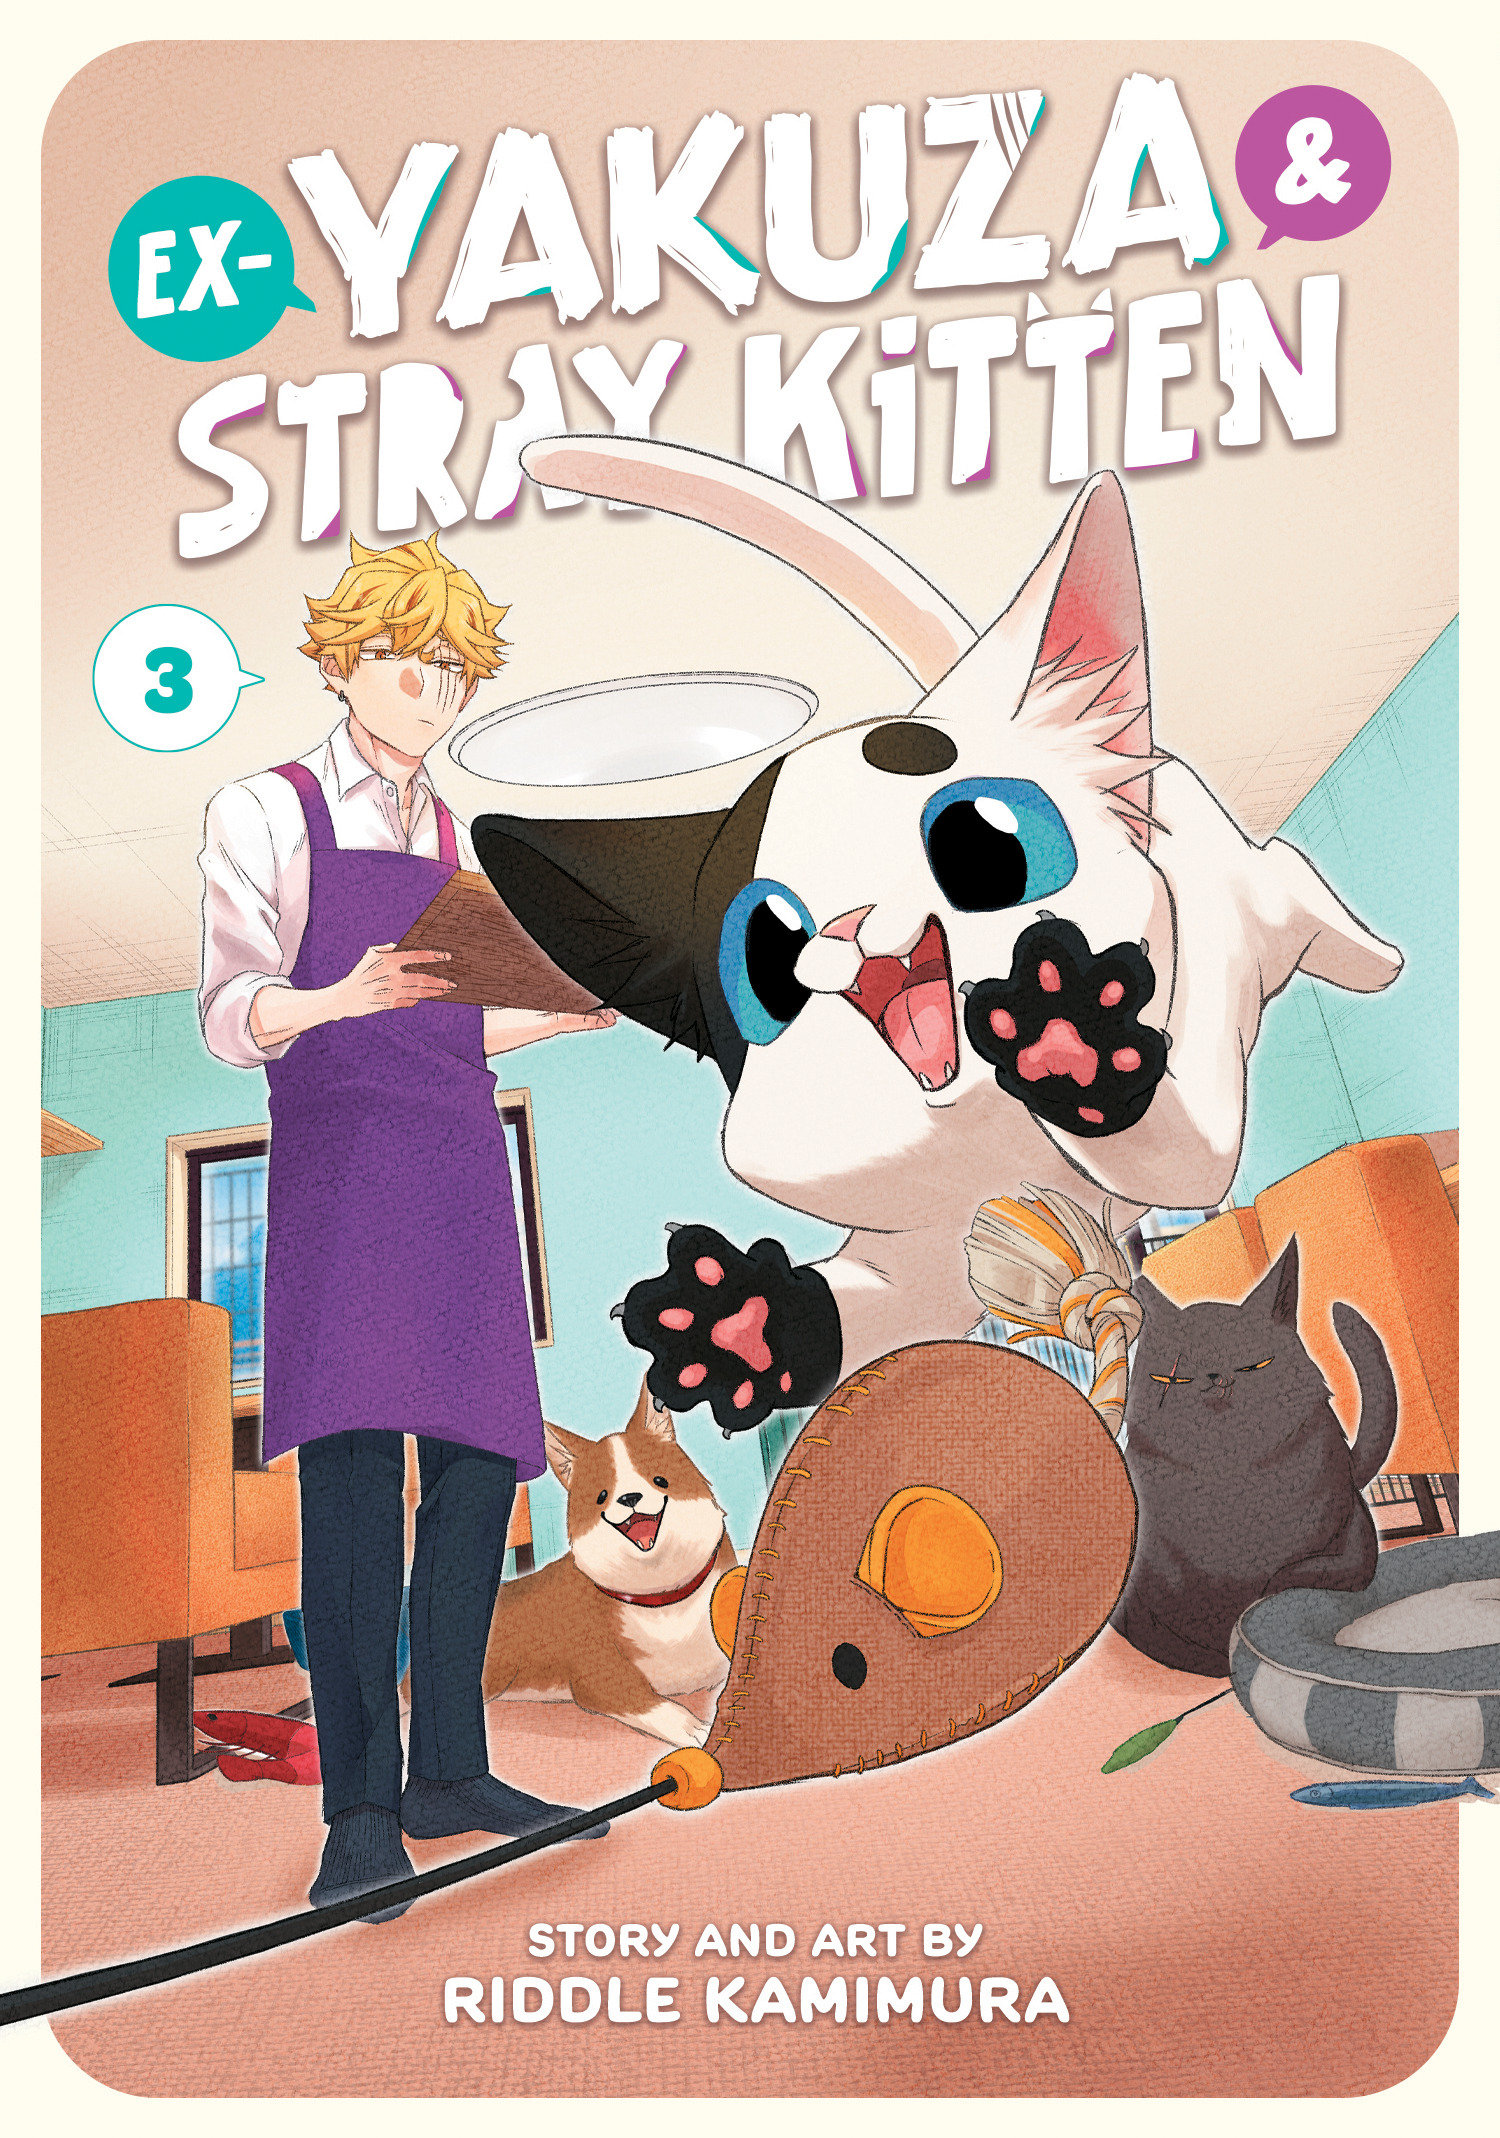 Ex Yakuza & Stray Kitten Manga Volume 3